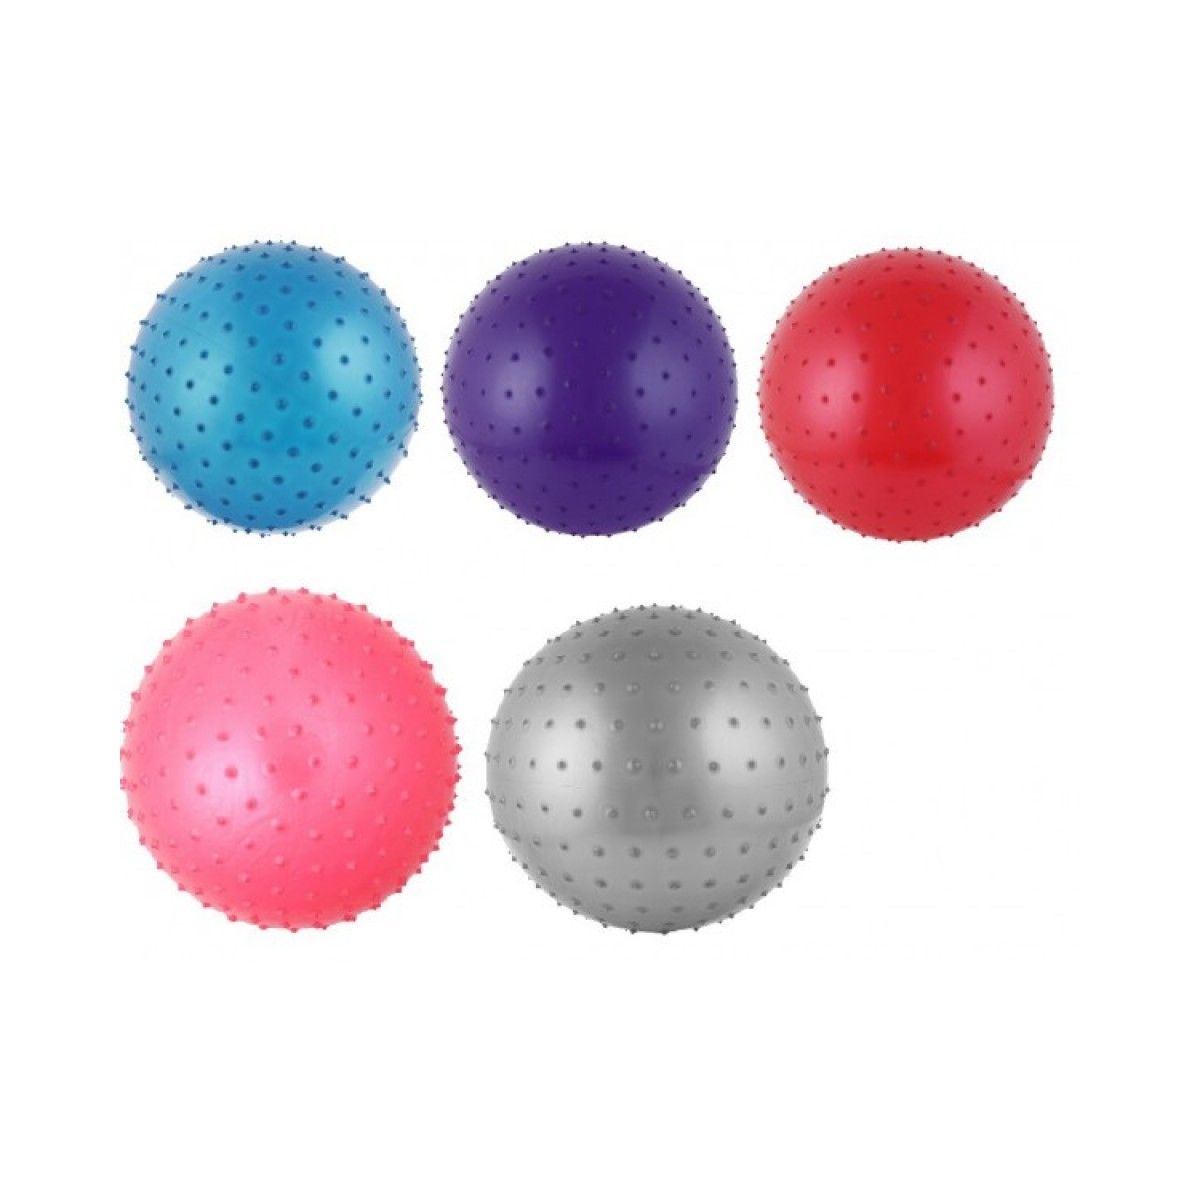 ЧП189841 [CO15008] М'яч для фітнесу CO15008 (20шт) 95 см 1500 грам в коробці 4 кольори з шипиками